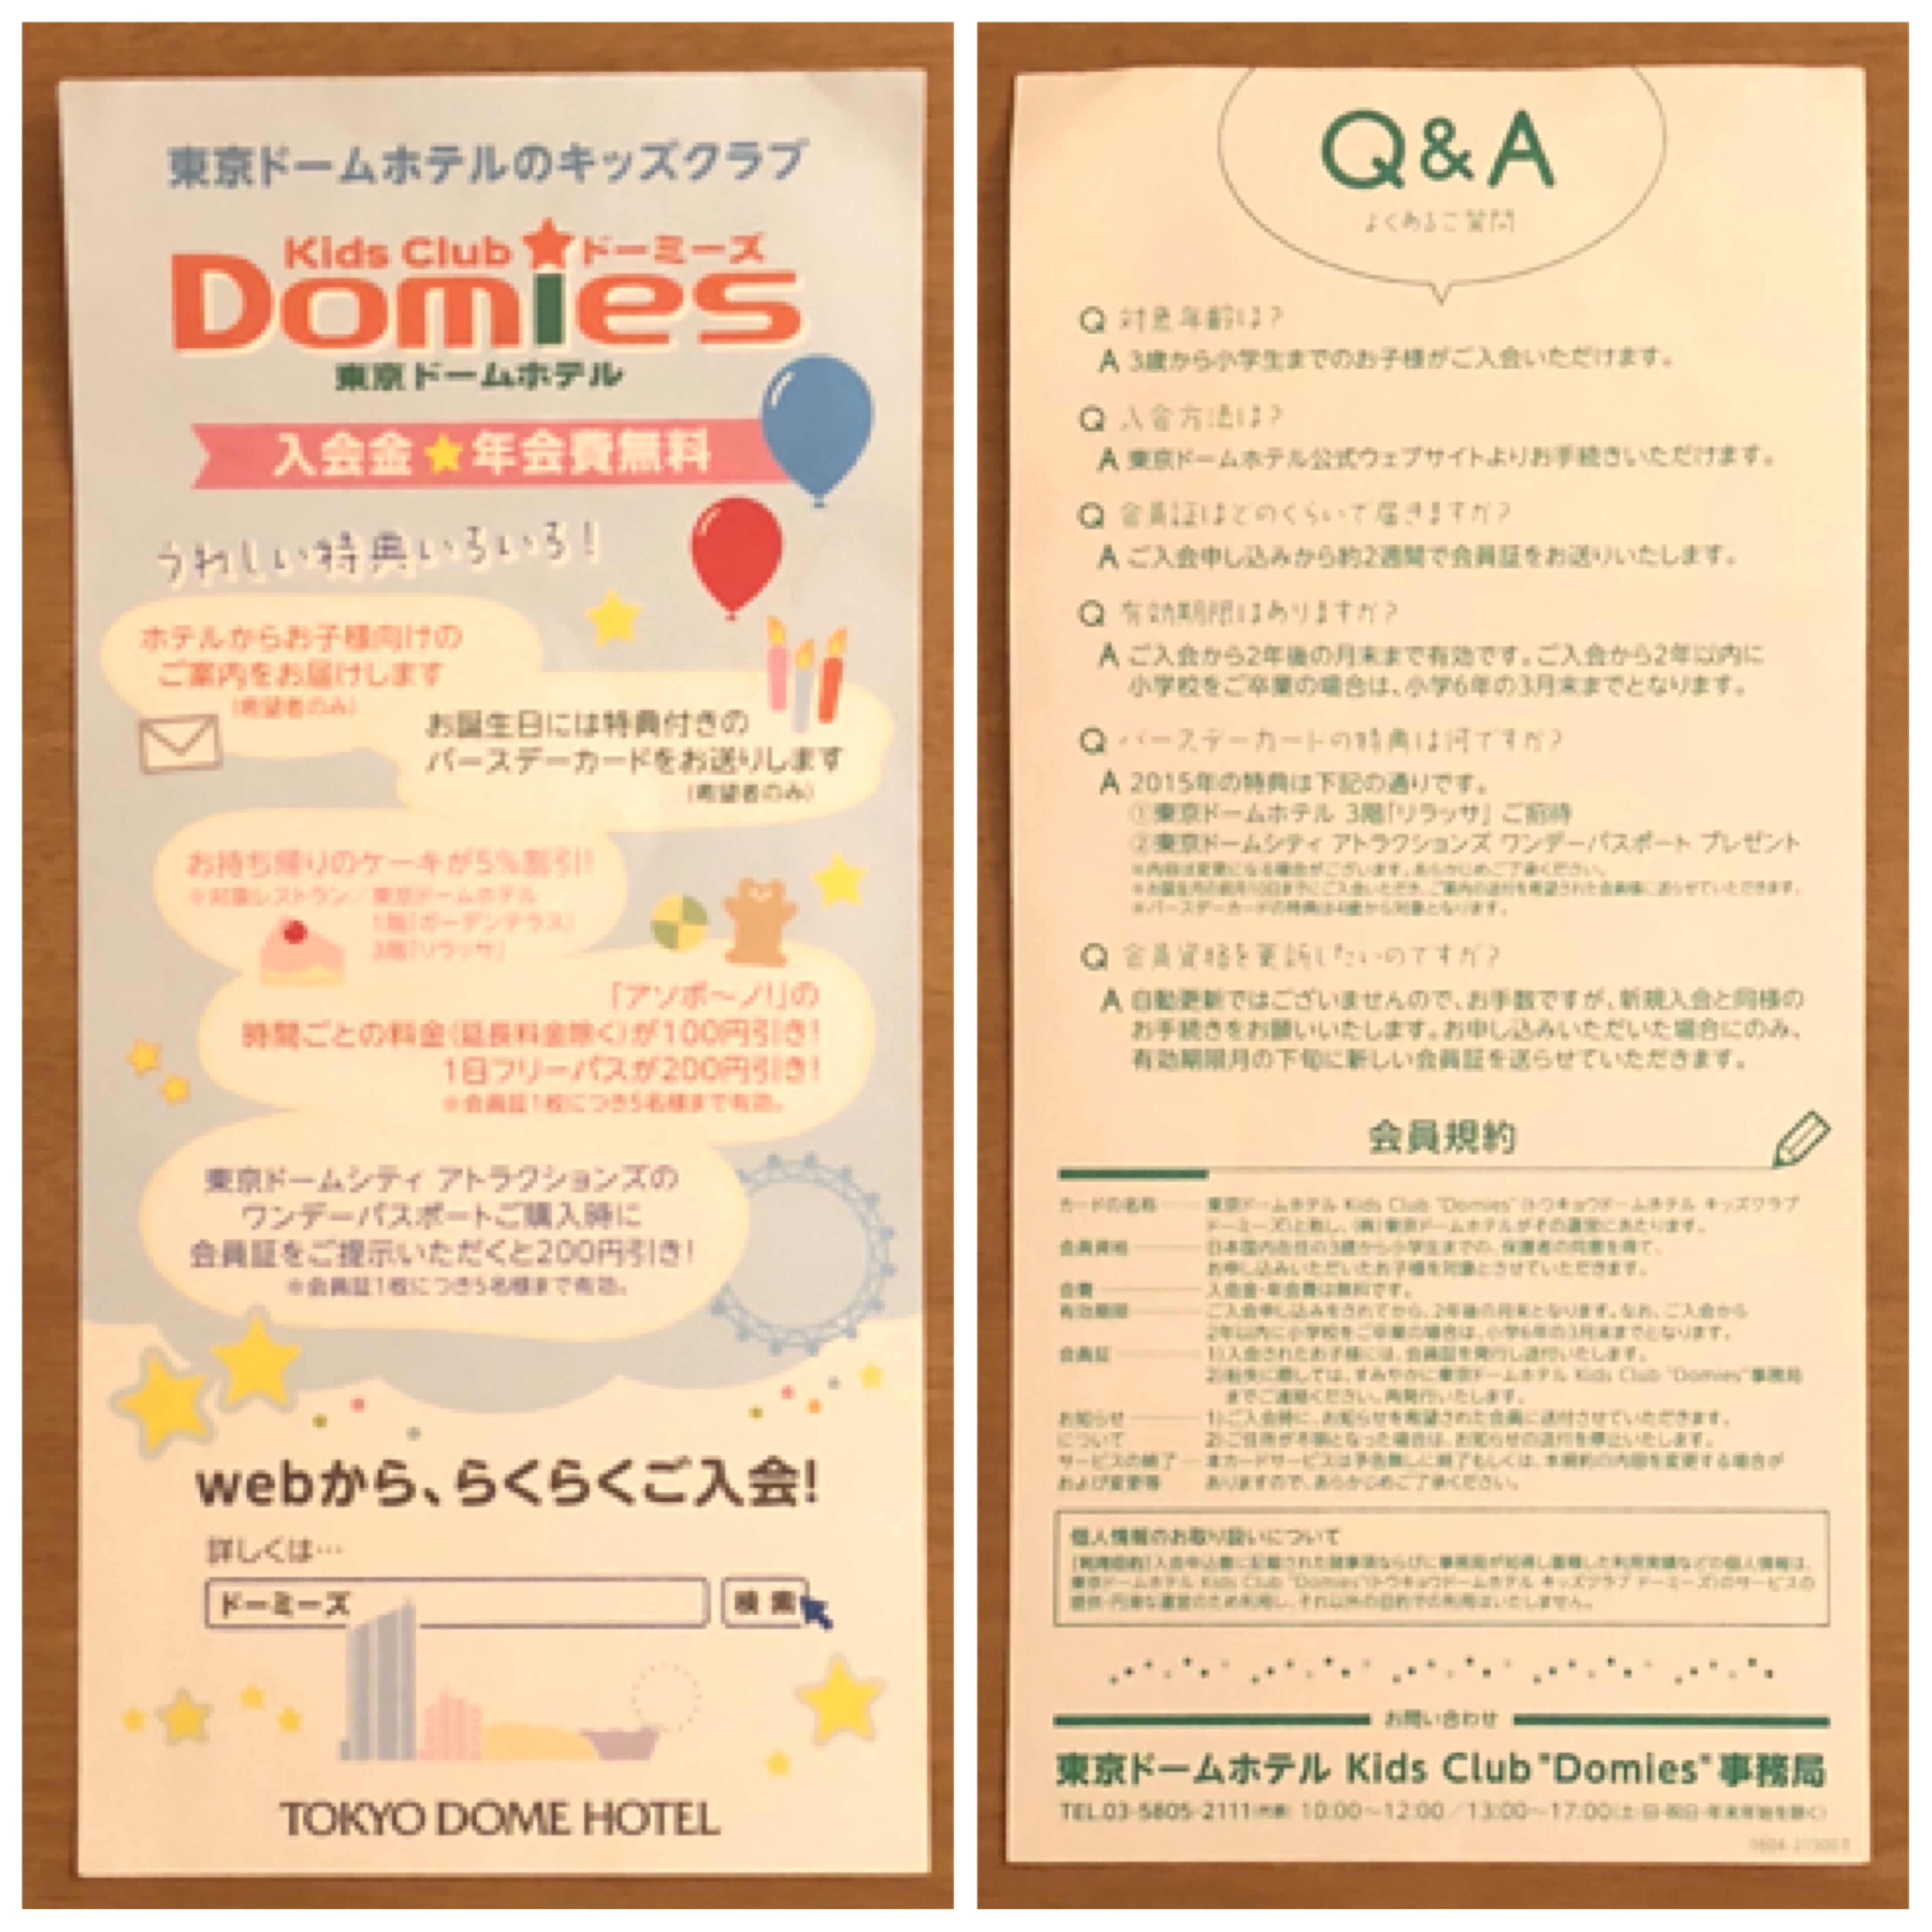 アクセス 立地良好の 東京ドームホテル 子供連れ 小学生未満 での宿泊のお得感は見逃せない わくわく子育て体験記